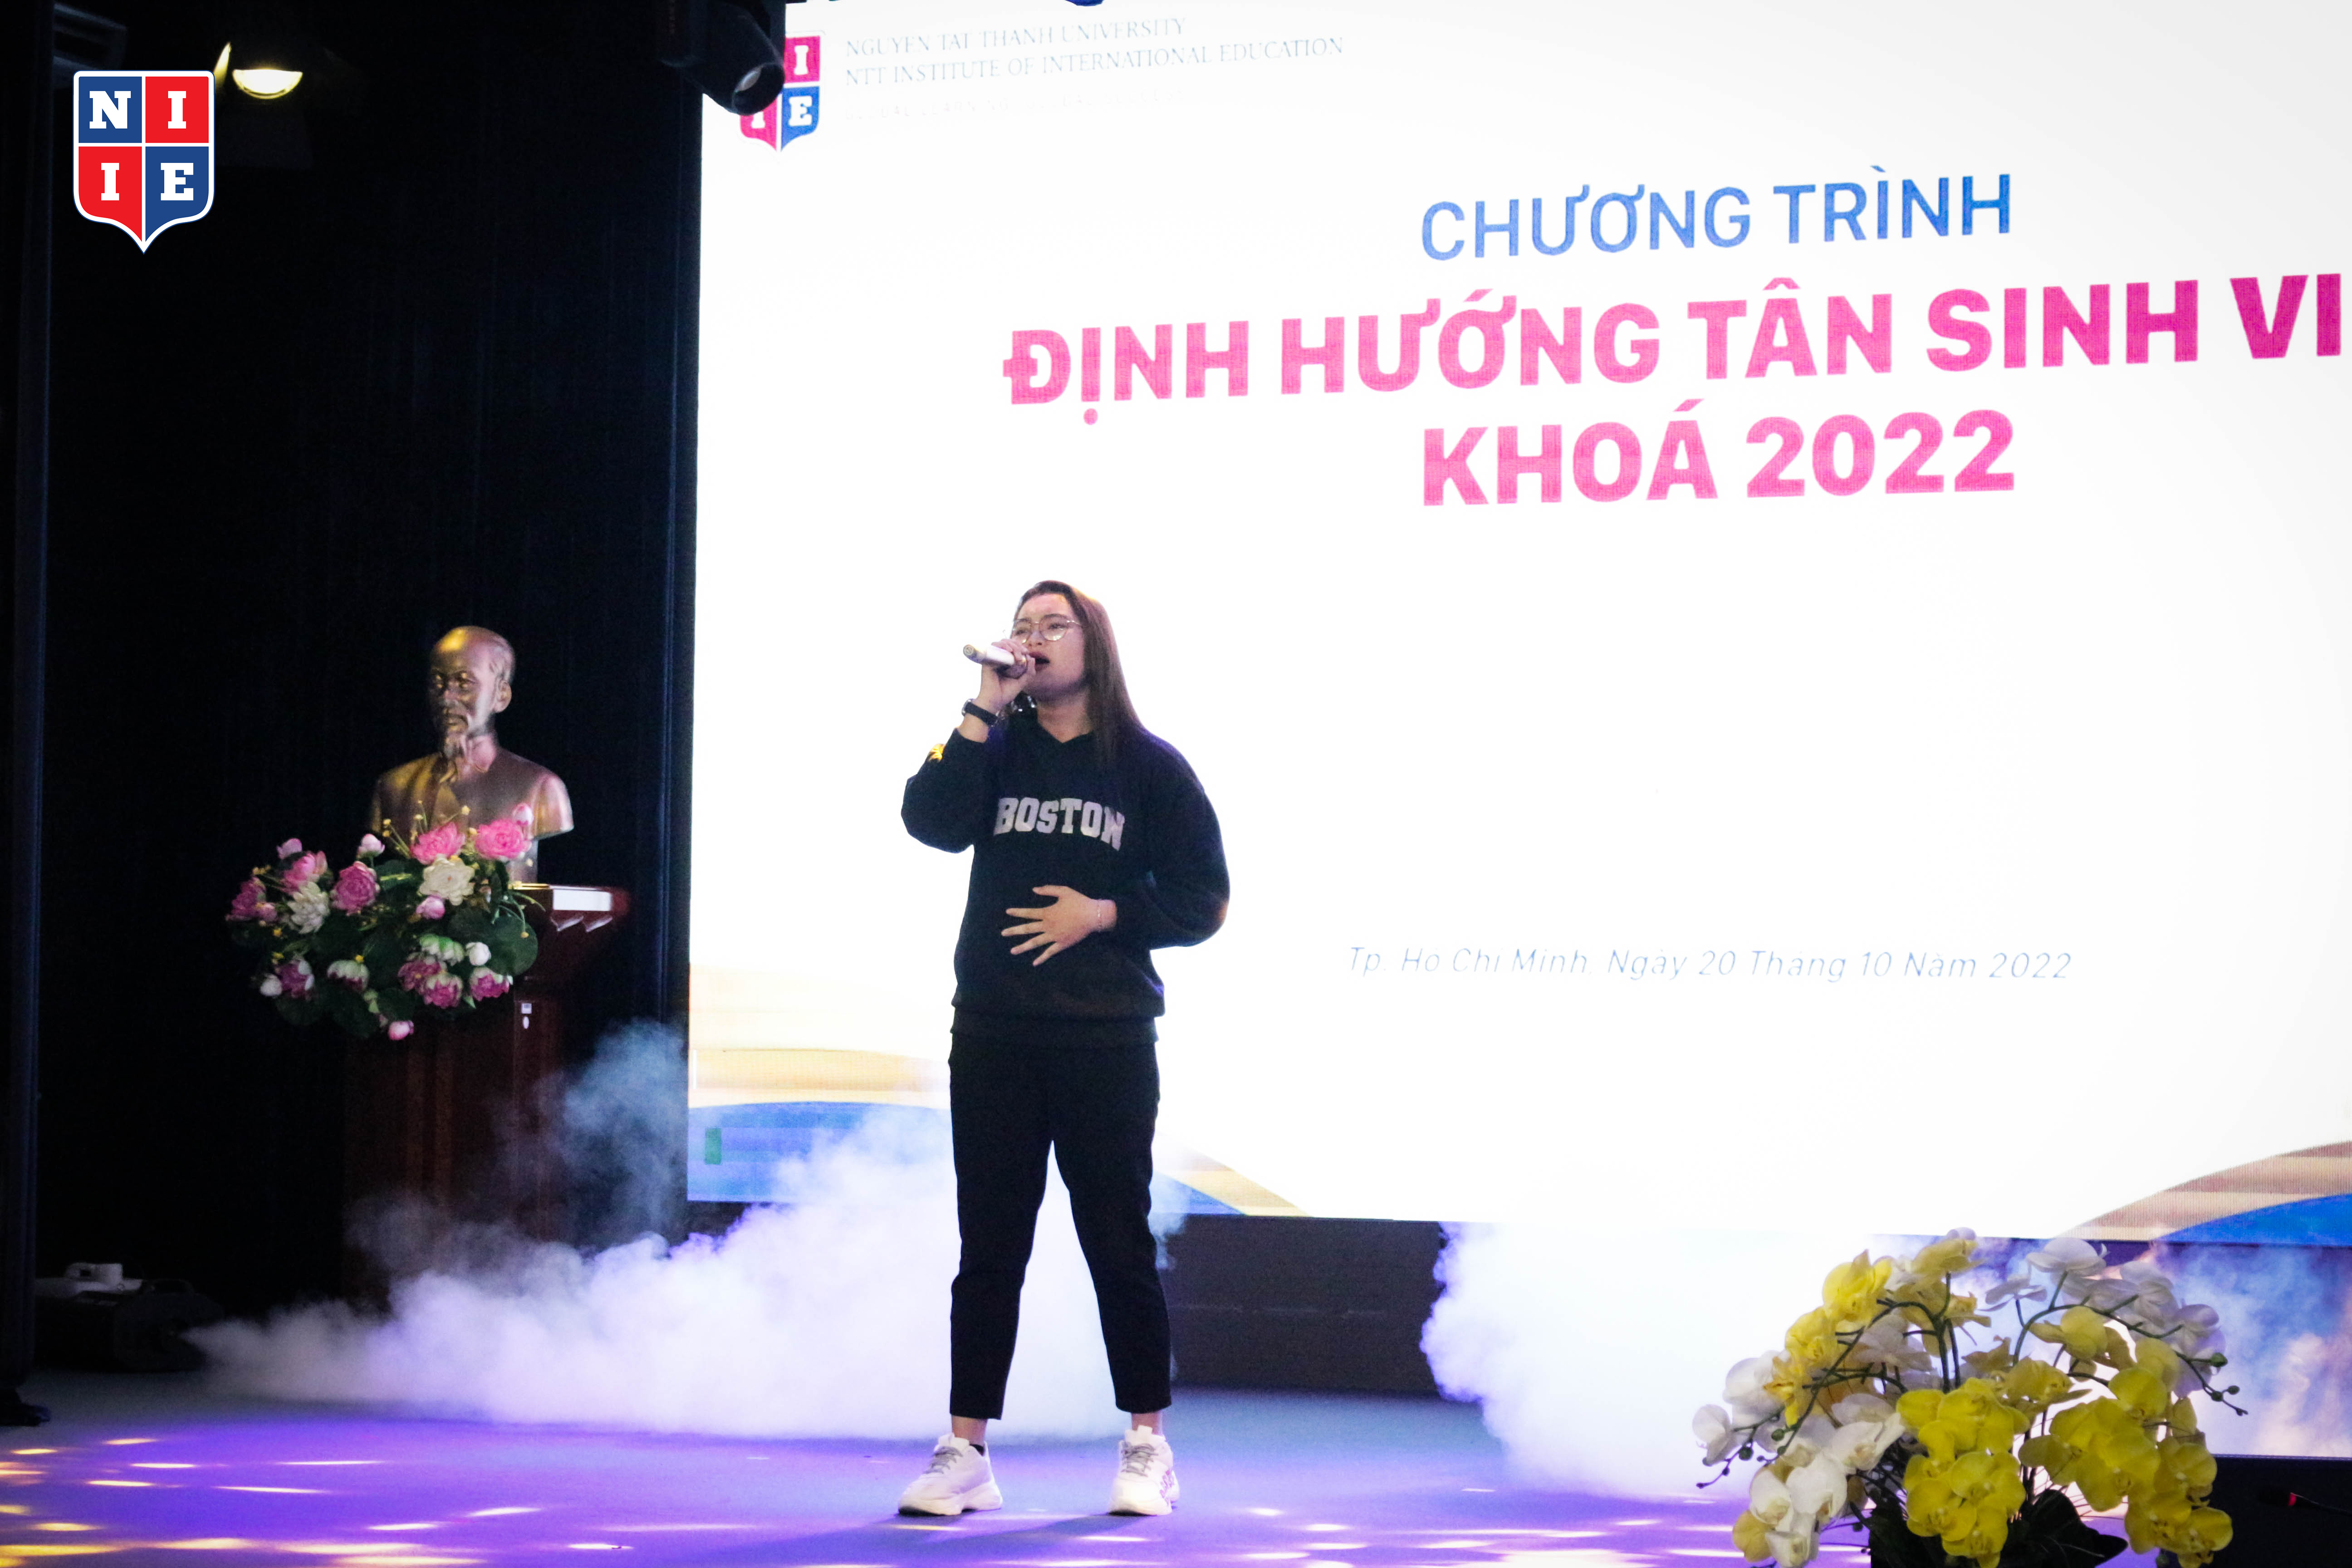 Chị Huỳnh Thị Mỹ Quyên, hạng 3 chương trình NIIE Got Talent 2022 đang trình bày ca khúc “Bay lên nhé nụ cười”